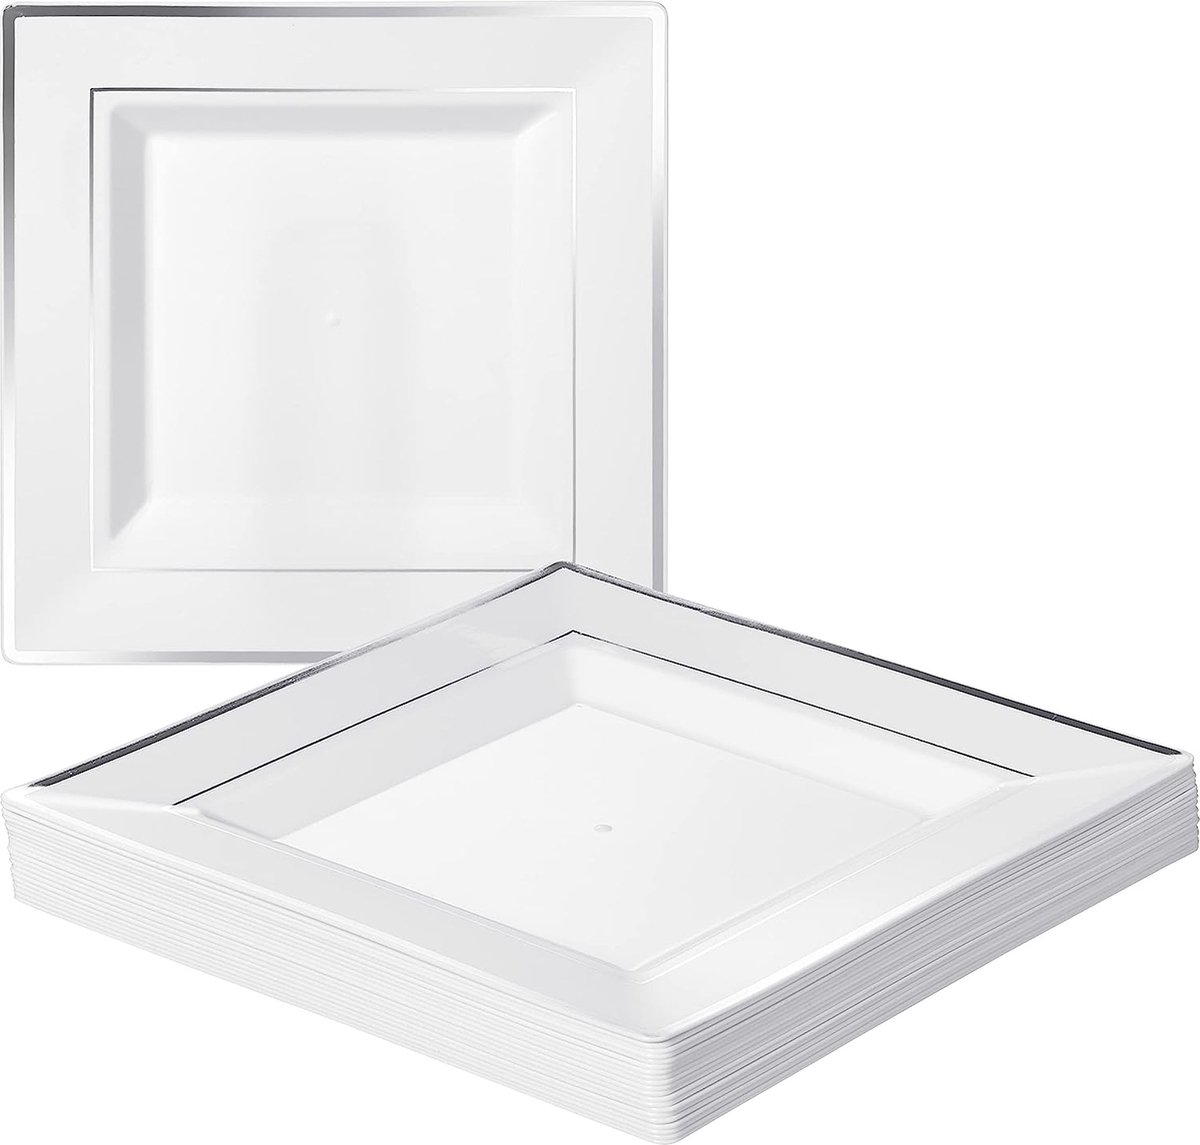 20 Witte Vierkante Plastic Borden met Zilveren Rand (24cm), Feestbordjes voor Bruiloften, Verjaardagen, Dopen, Kerstmis & Feesten - Stevig en Herbruikbaar